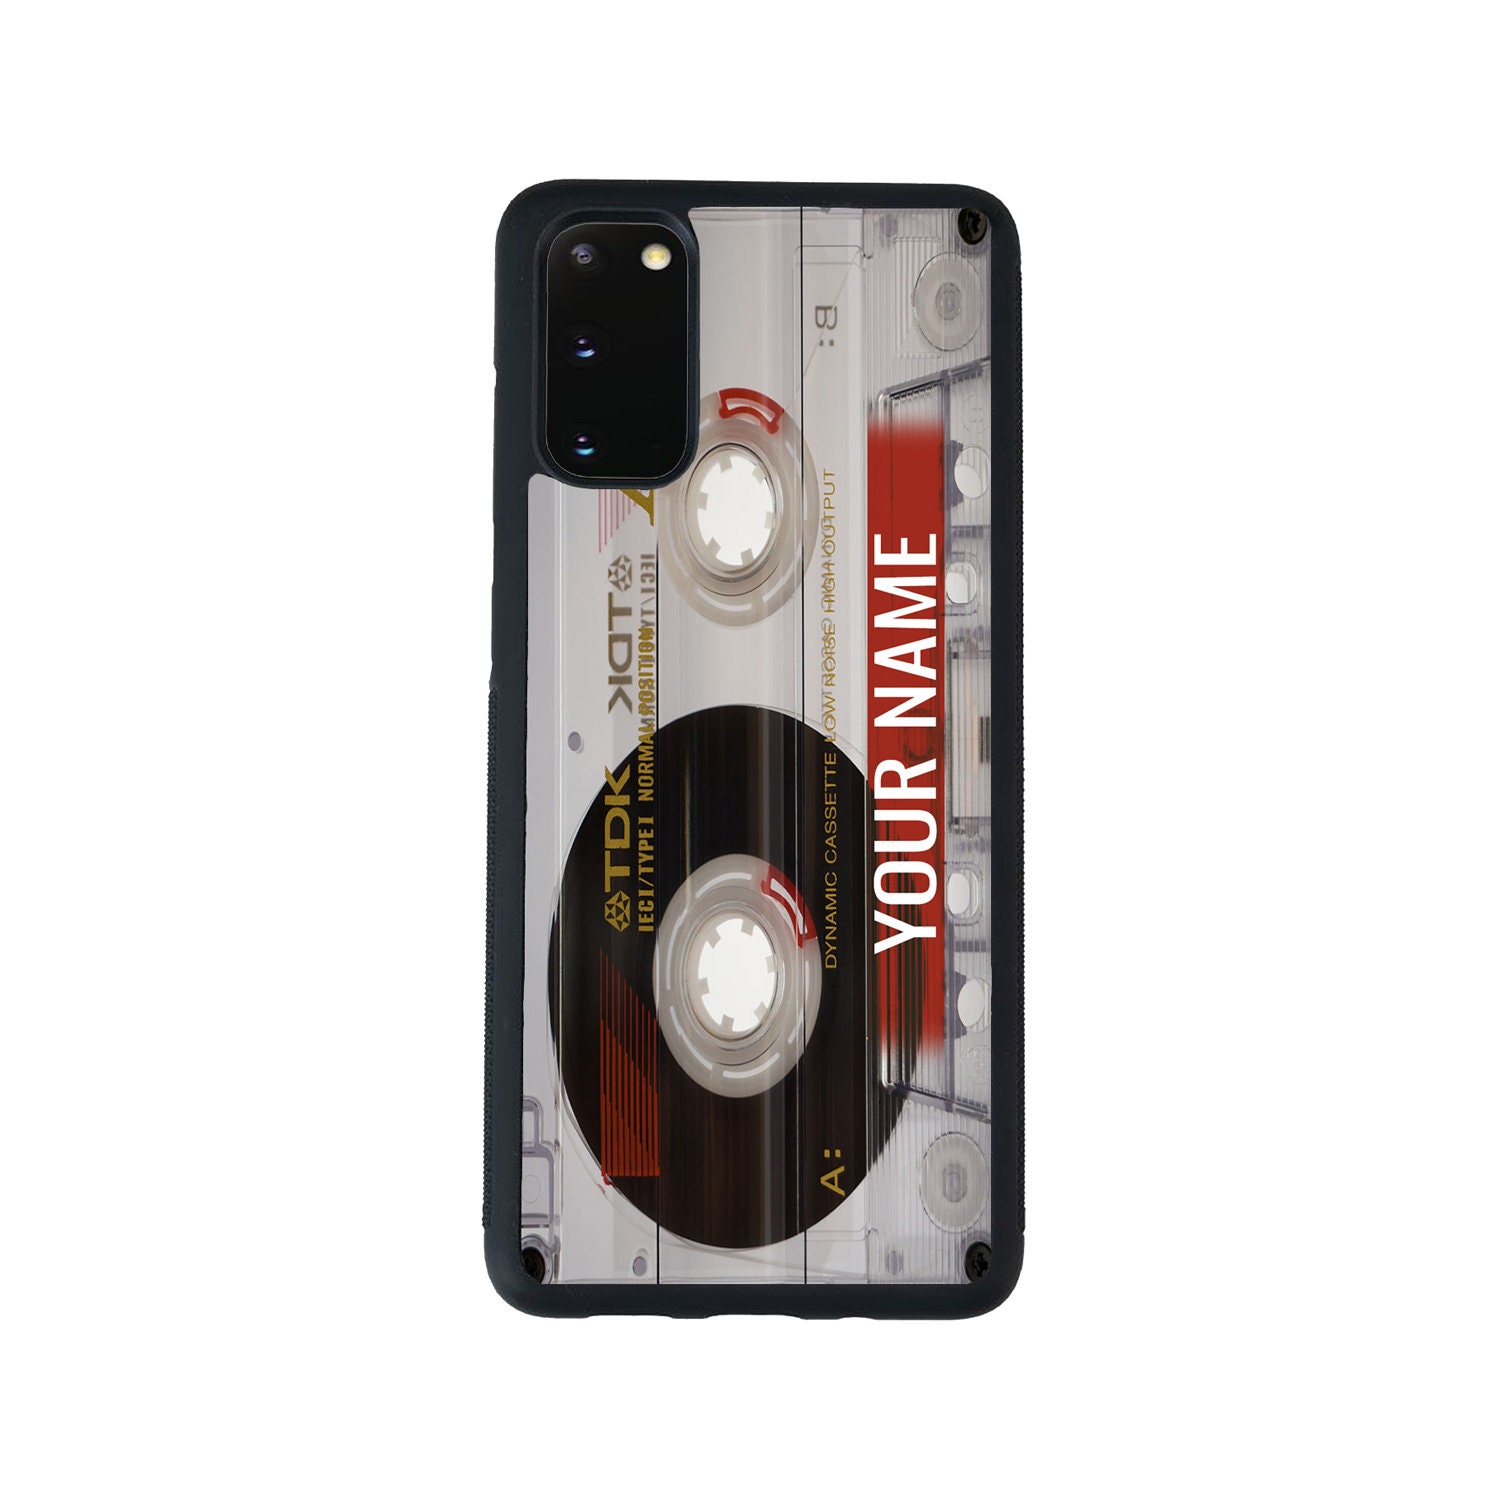 Mix Tape Wallet Case, Retro Cassette Tape Case, Music Mix Wallet